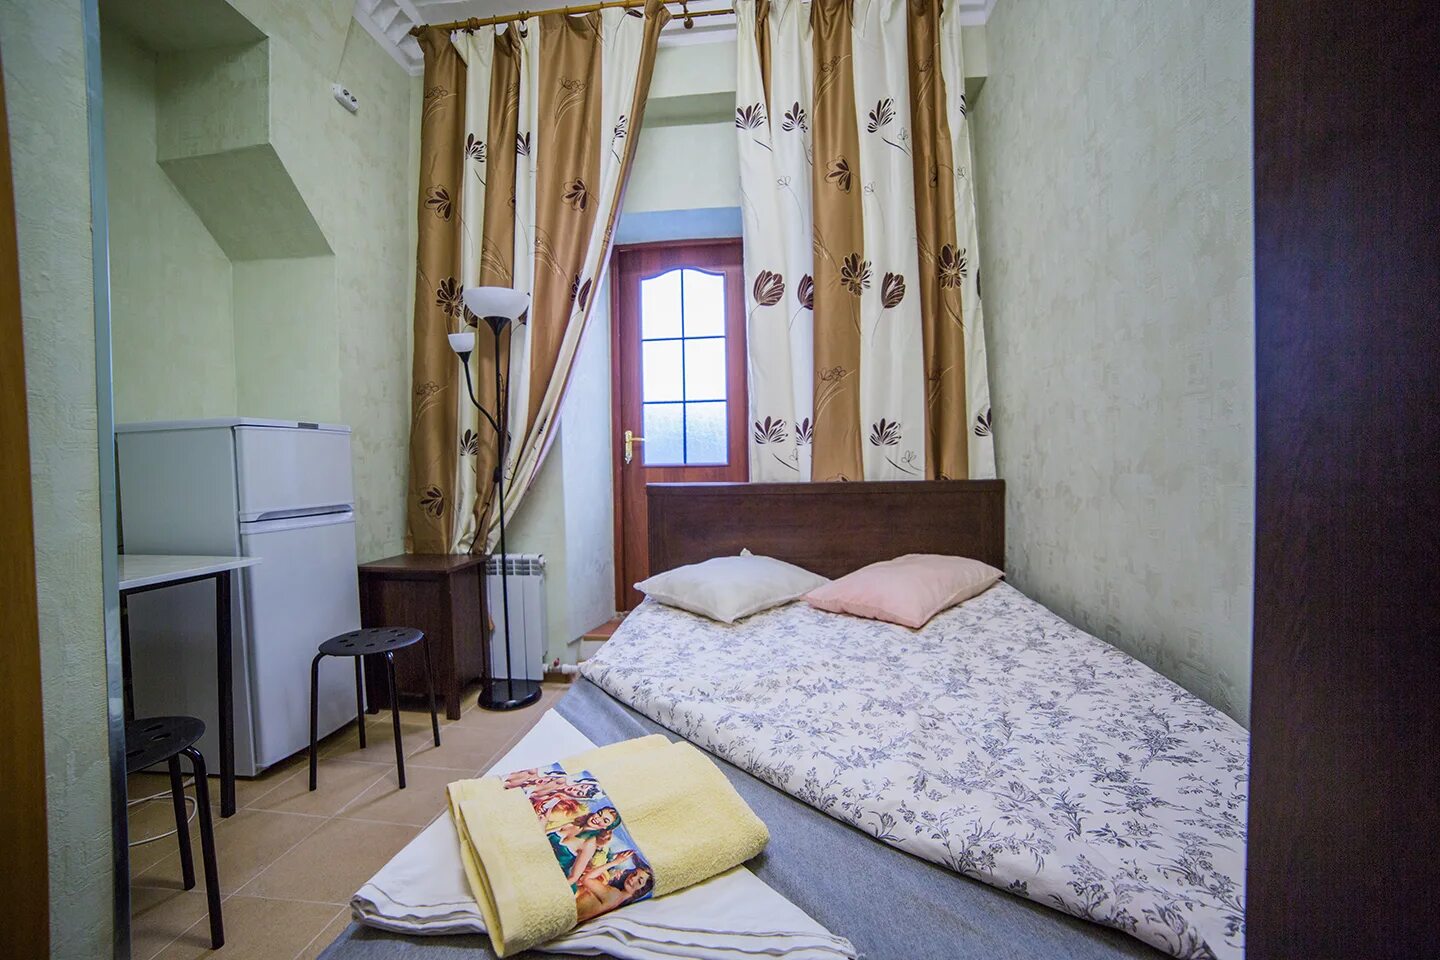 Найти комнату на 2 человека. Комната с двуспальной кроватью в общежитии. Общежитие в Москве на 1 человека. Общежитие с отдельной комнатой. Комната в общежитии на 1 человека.